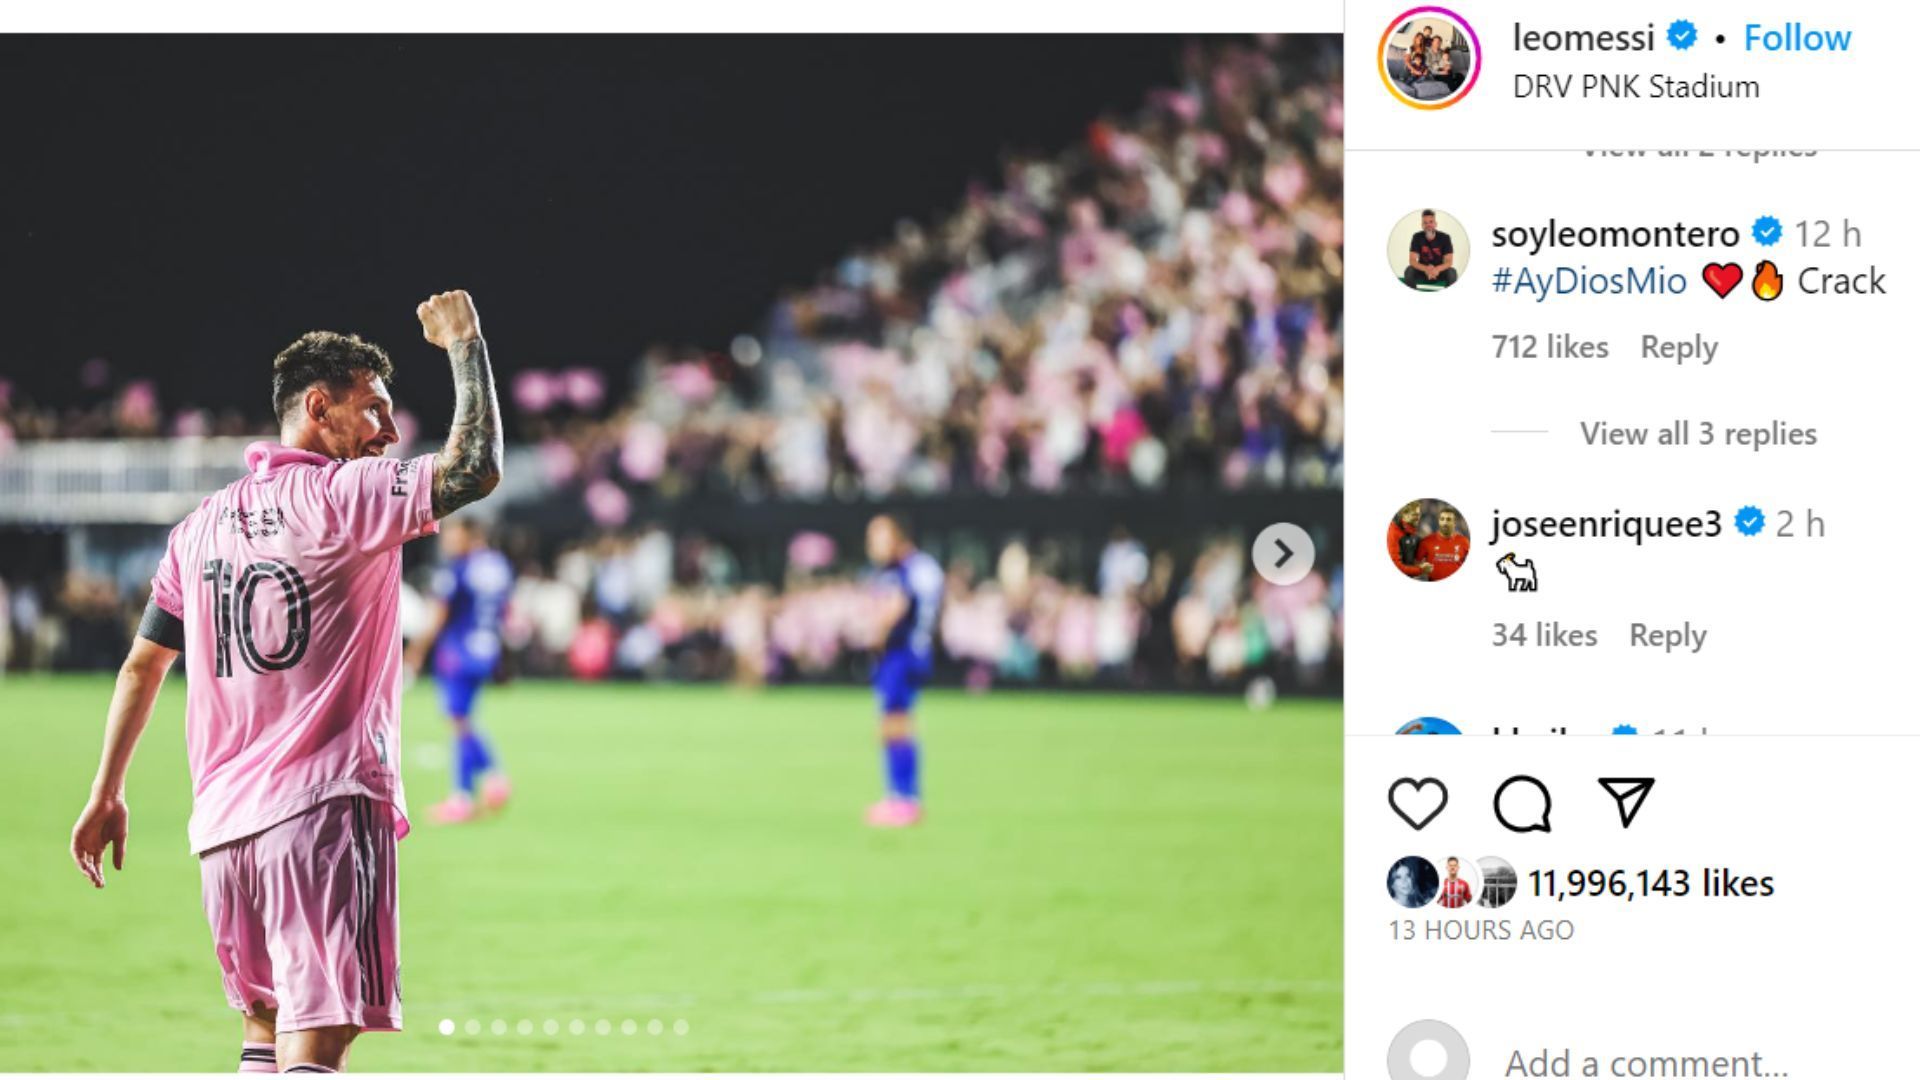 Jose Enrique commented under Lionel Messi&#039;s post